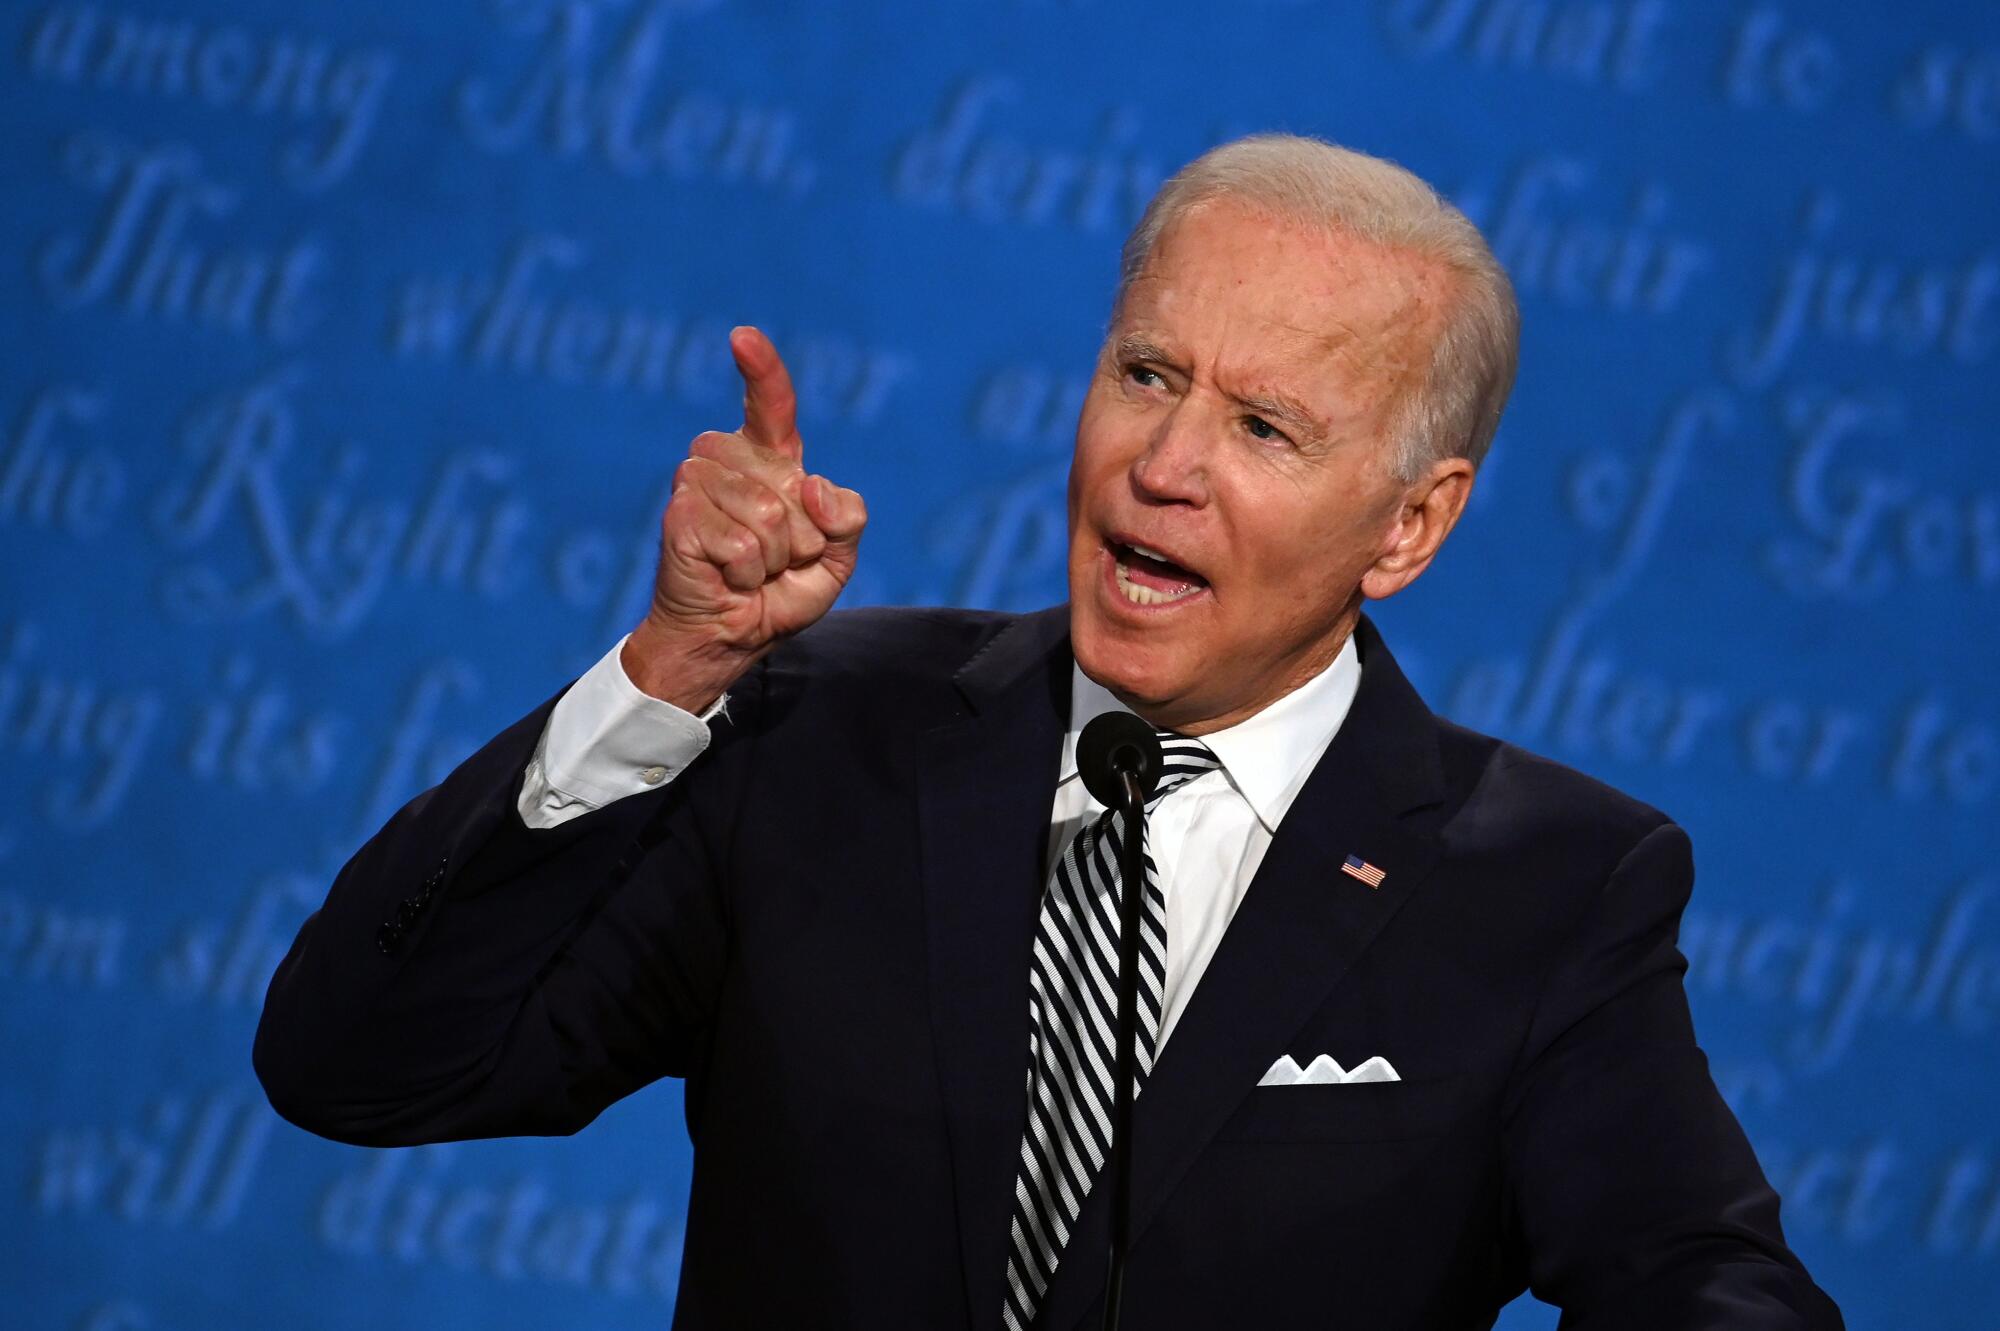 Joe Biden speaks during a debate